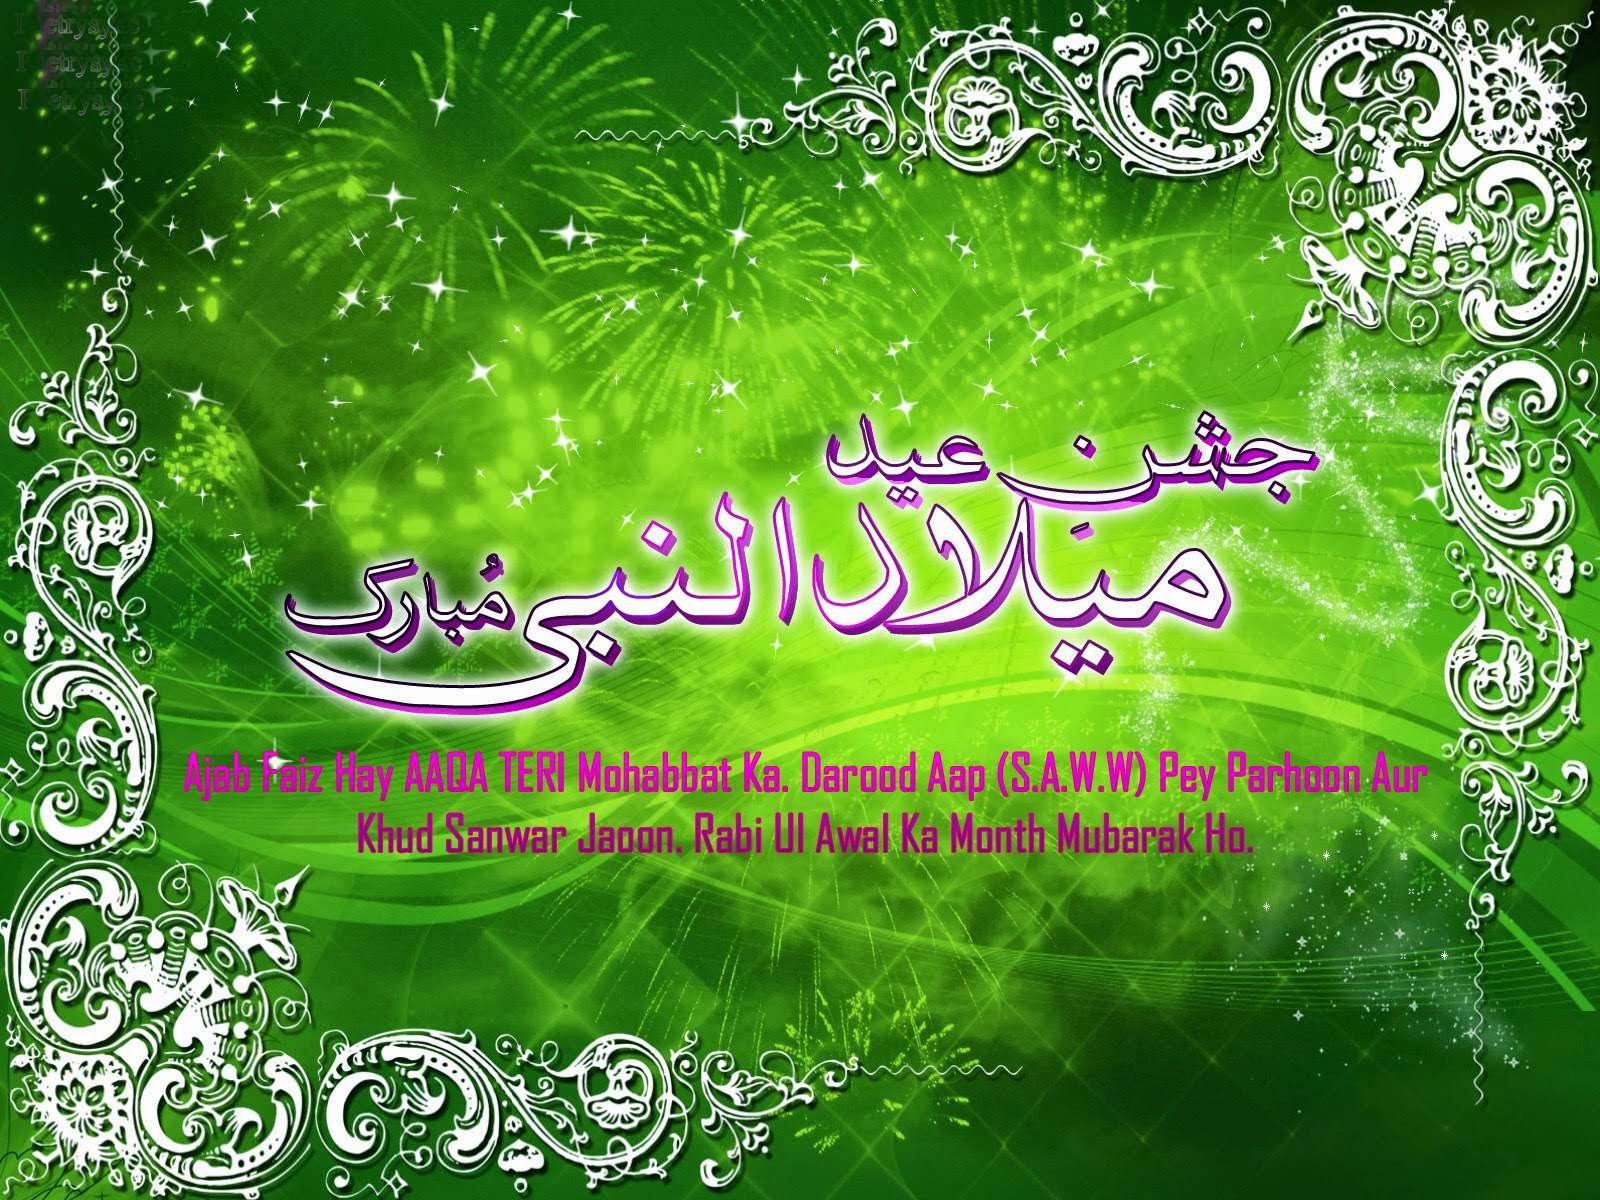 Eid Milad Un Nabi Mubarak 2016 HD Wallpaper Free Download | Wish ...